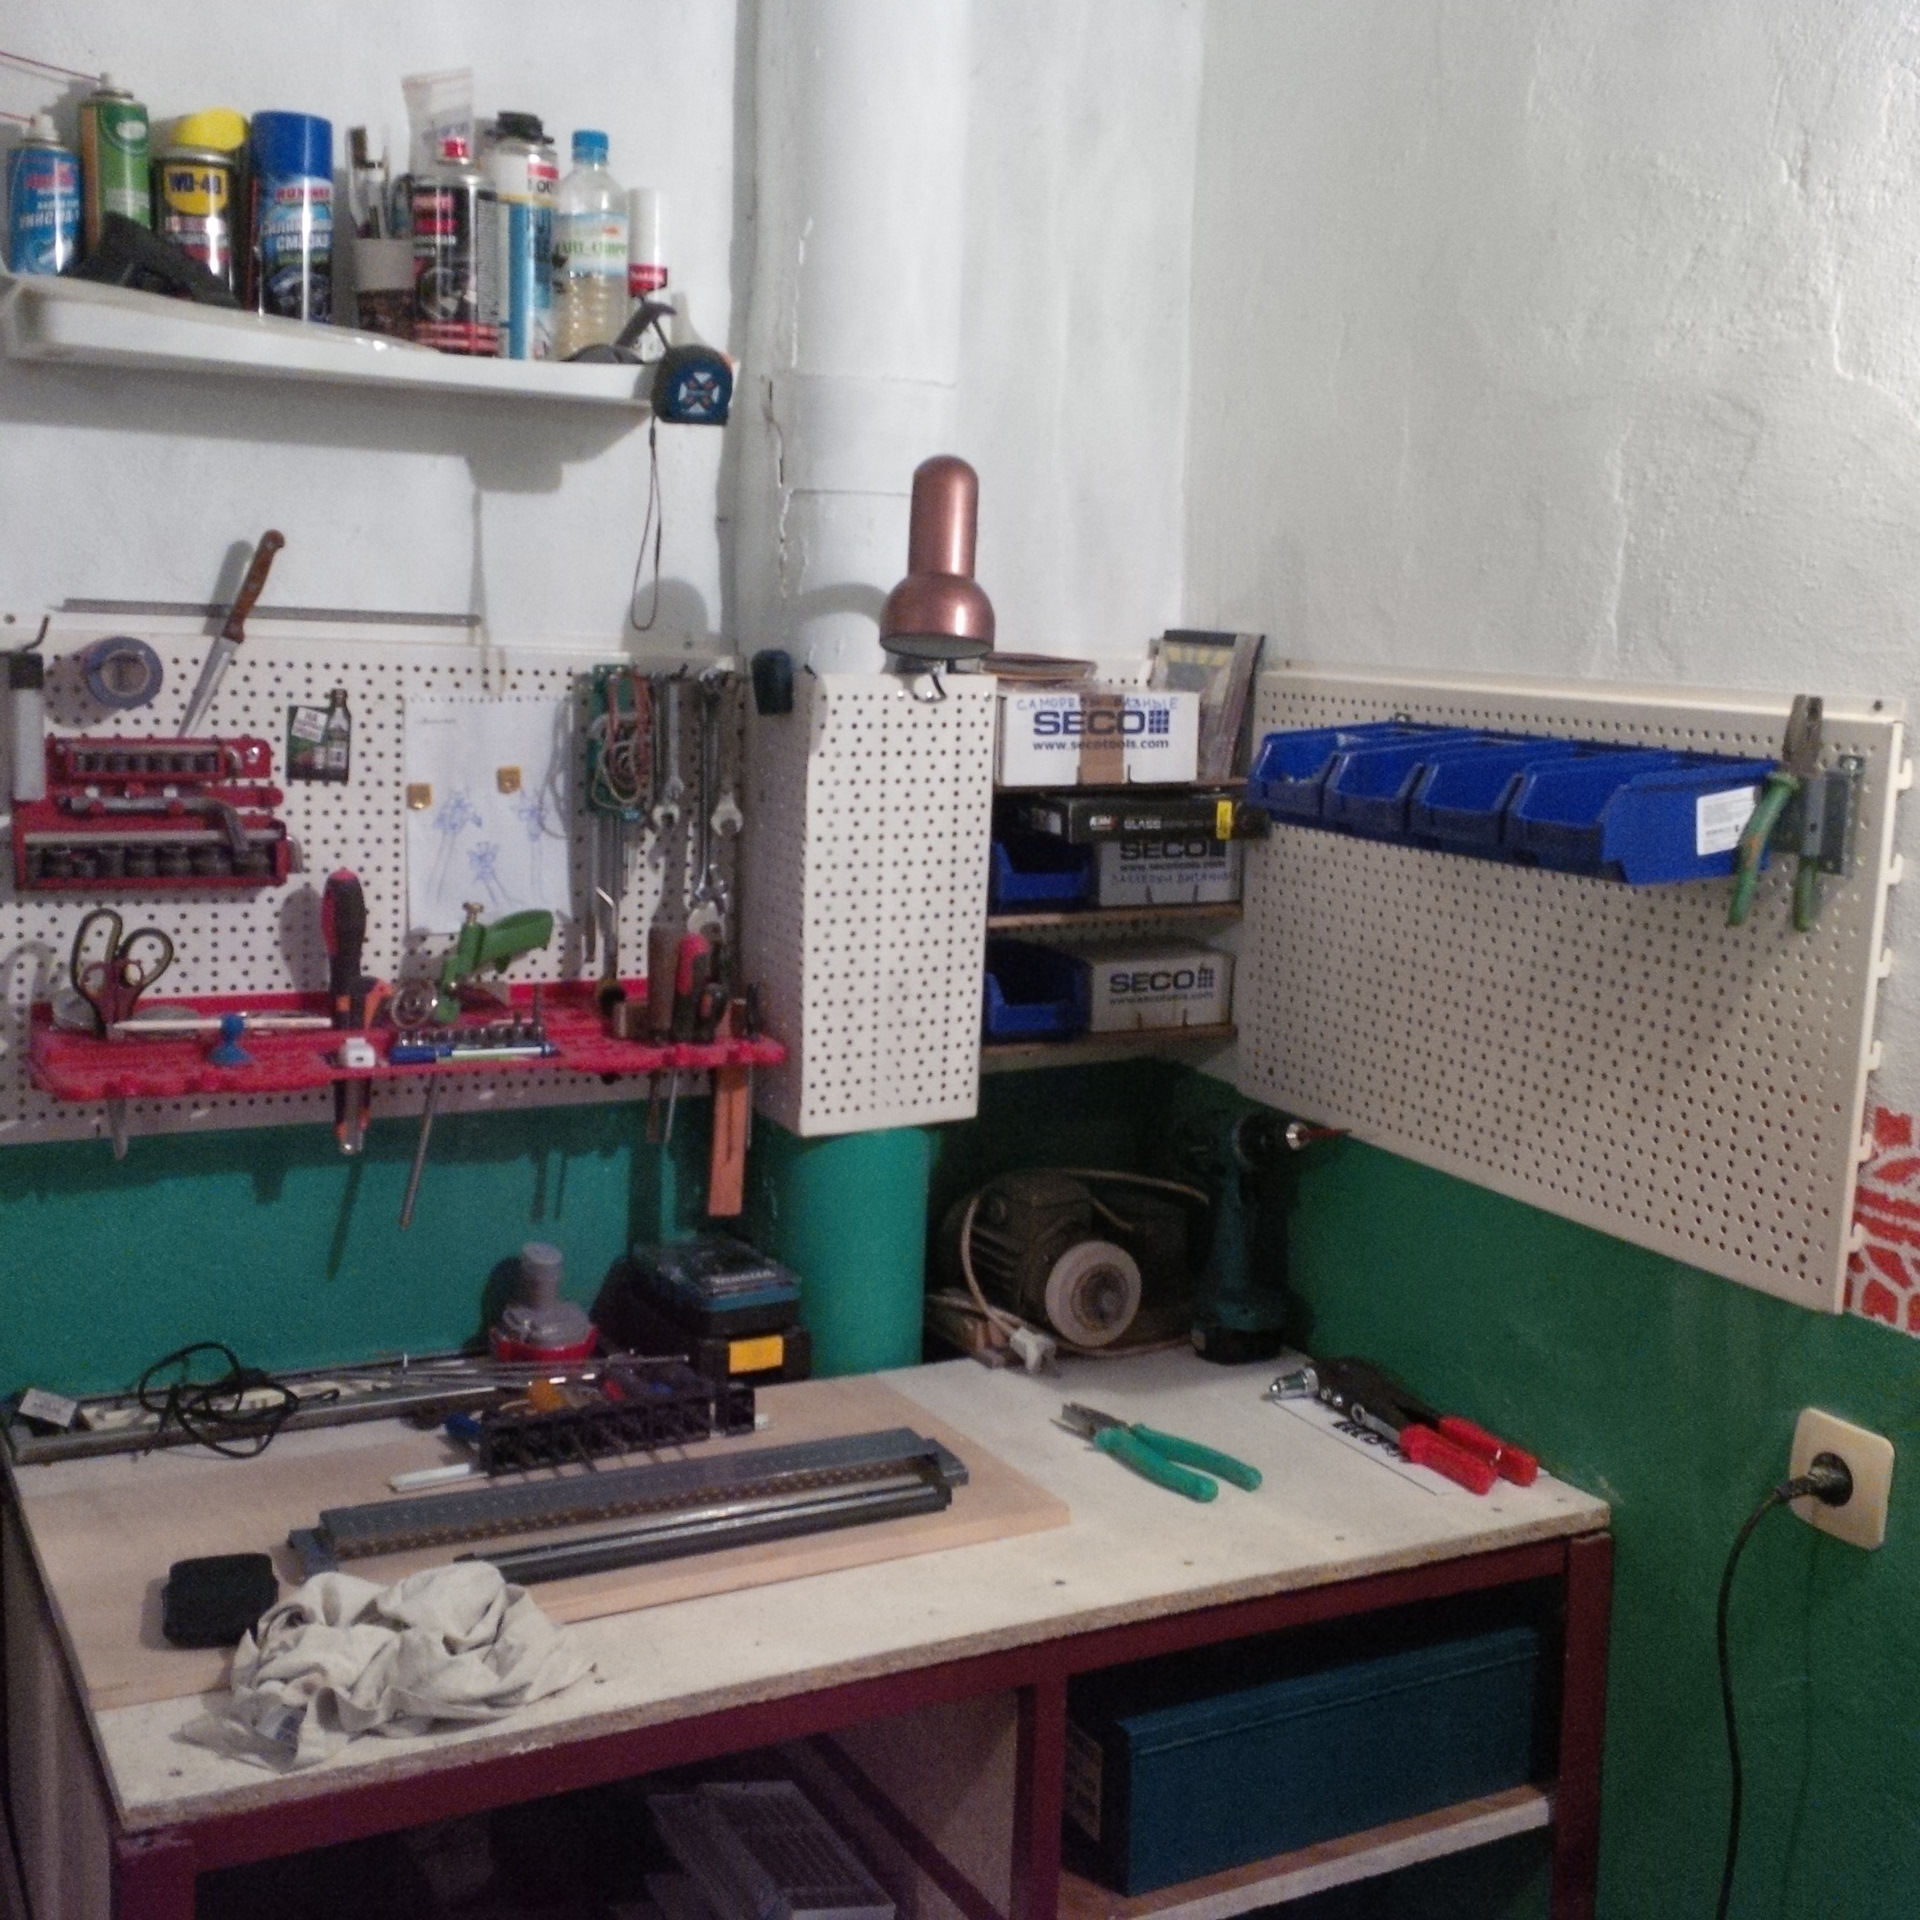 Столярная мастерская в гараже: как обустроить своими руками, инструменты